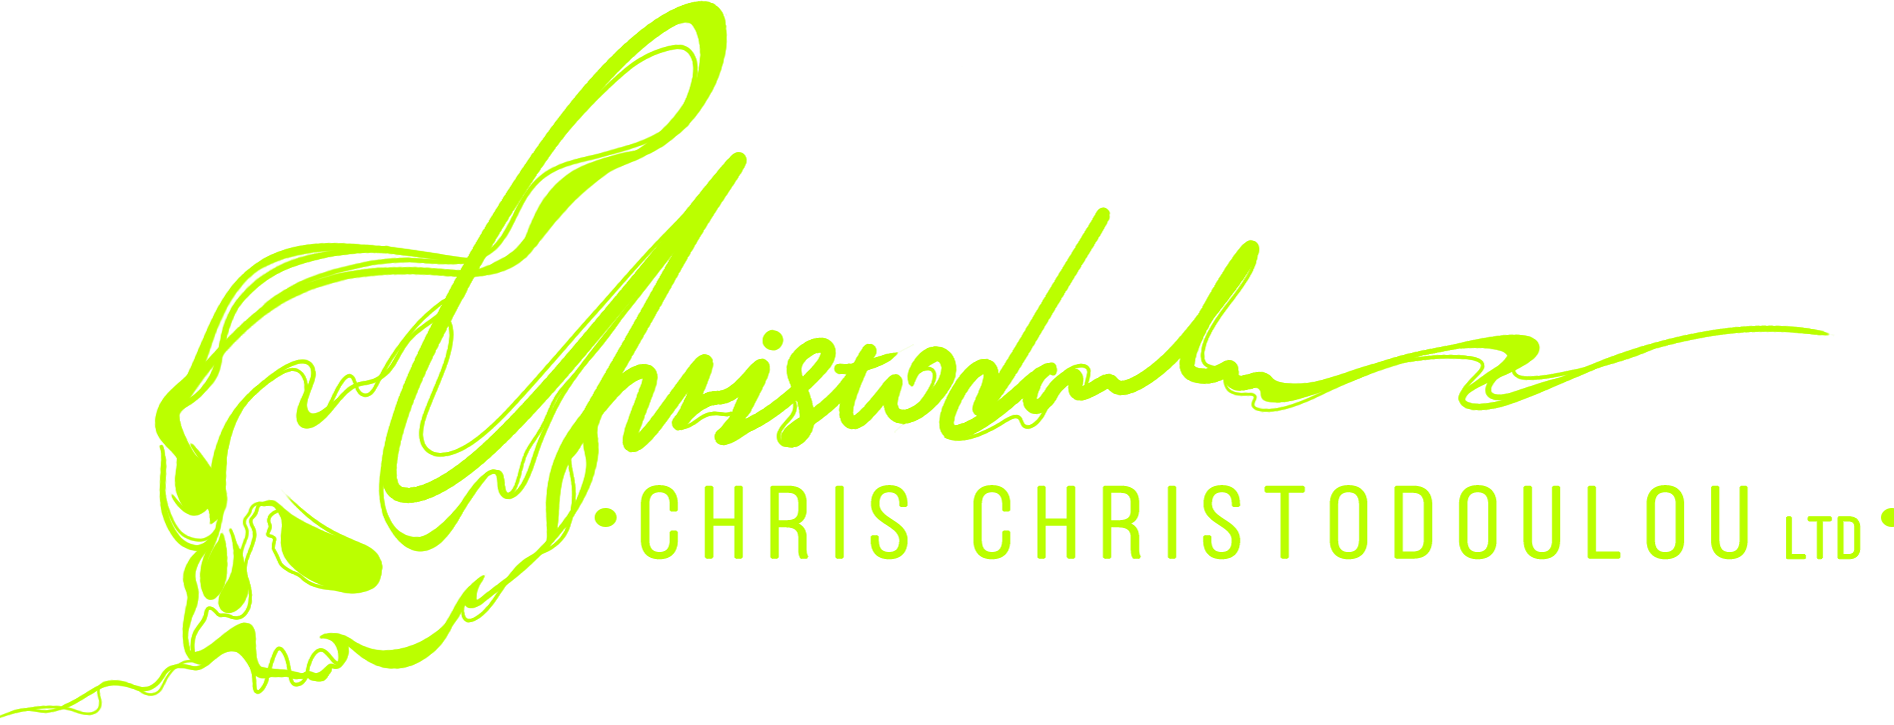 chris christodoulou